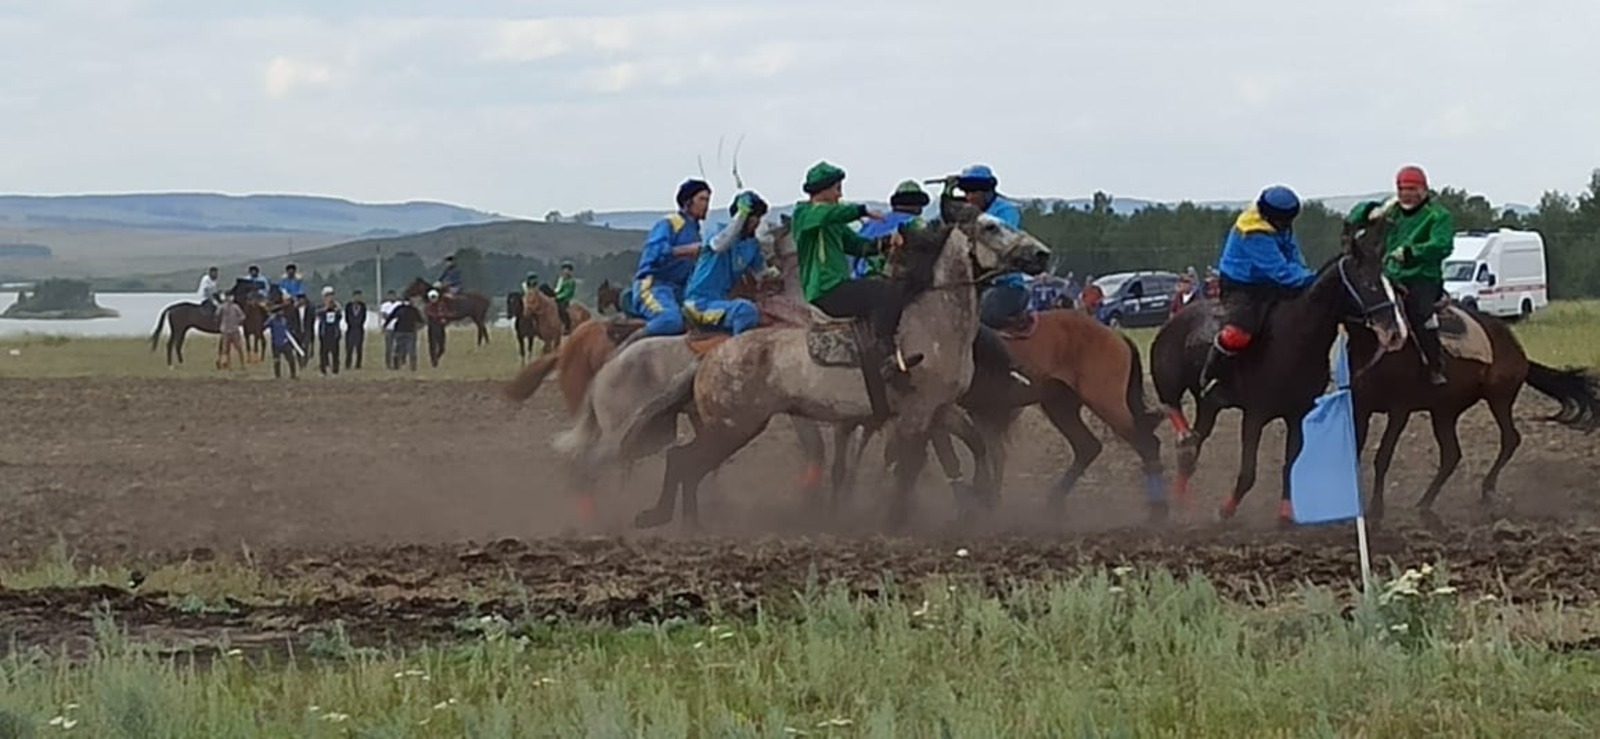 На республиканском фестивале башкирской лошади началась финальная игра «Ылак» и скачки